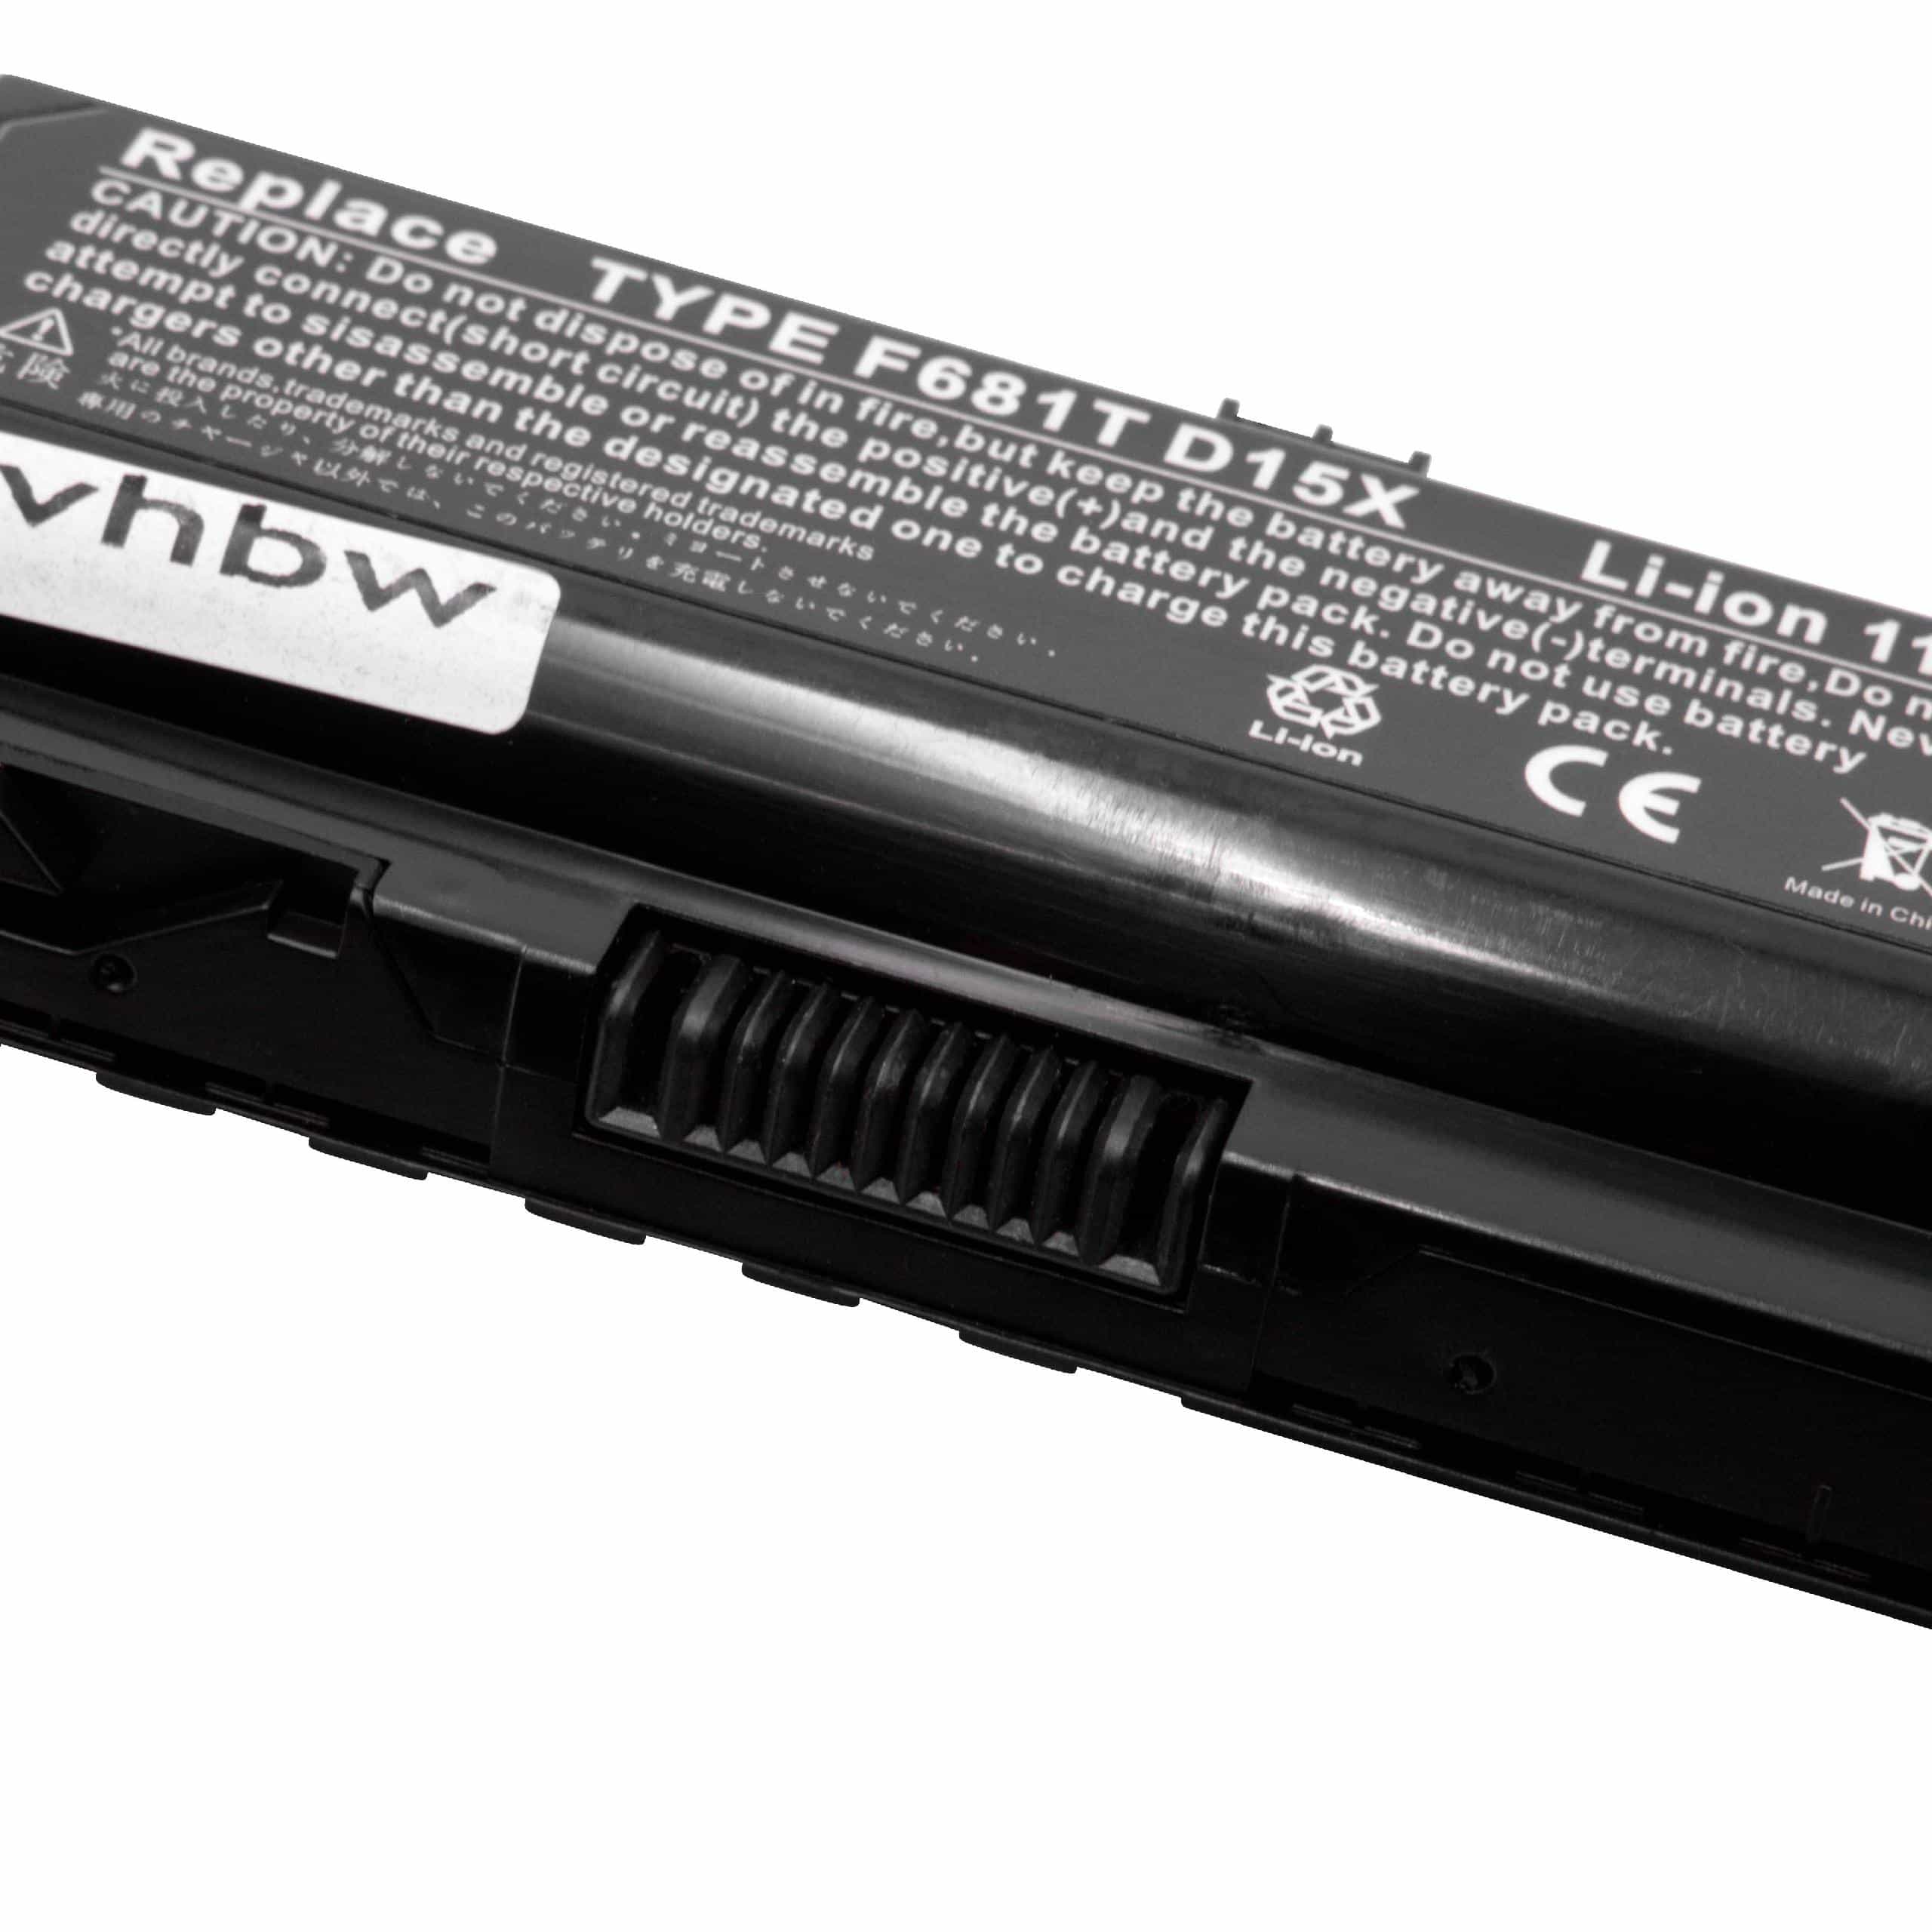 Batterie remplace Dell 0HC26Y, 0F681T, 0D951T, 0W3VX3 pour ordinateur portable - 5200mAh 11,1V Li-ion, noir